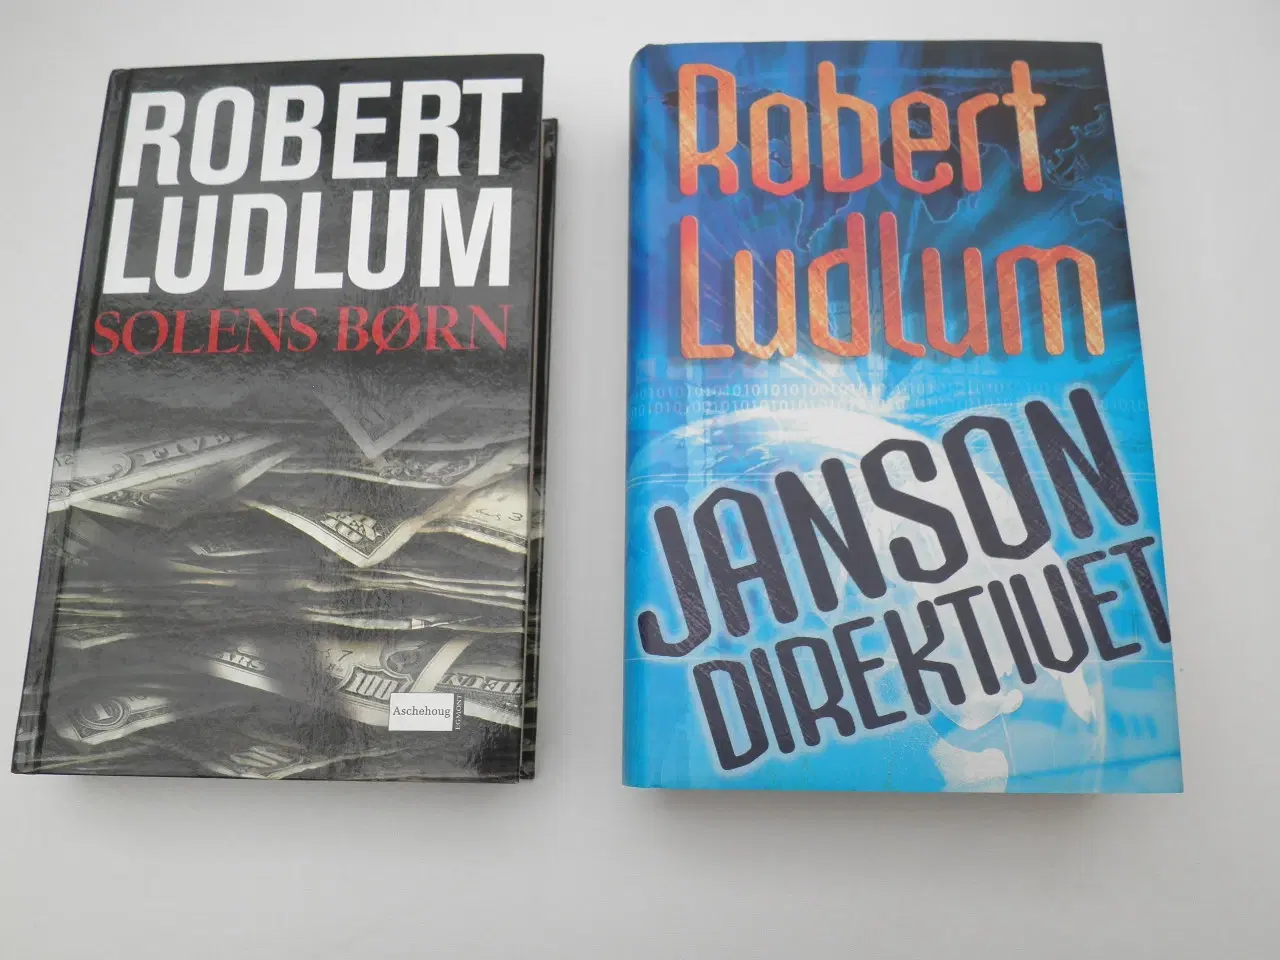 Billede 1 - 2 bøger af Robert Ludlum